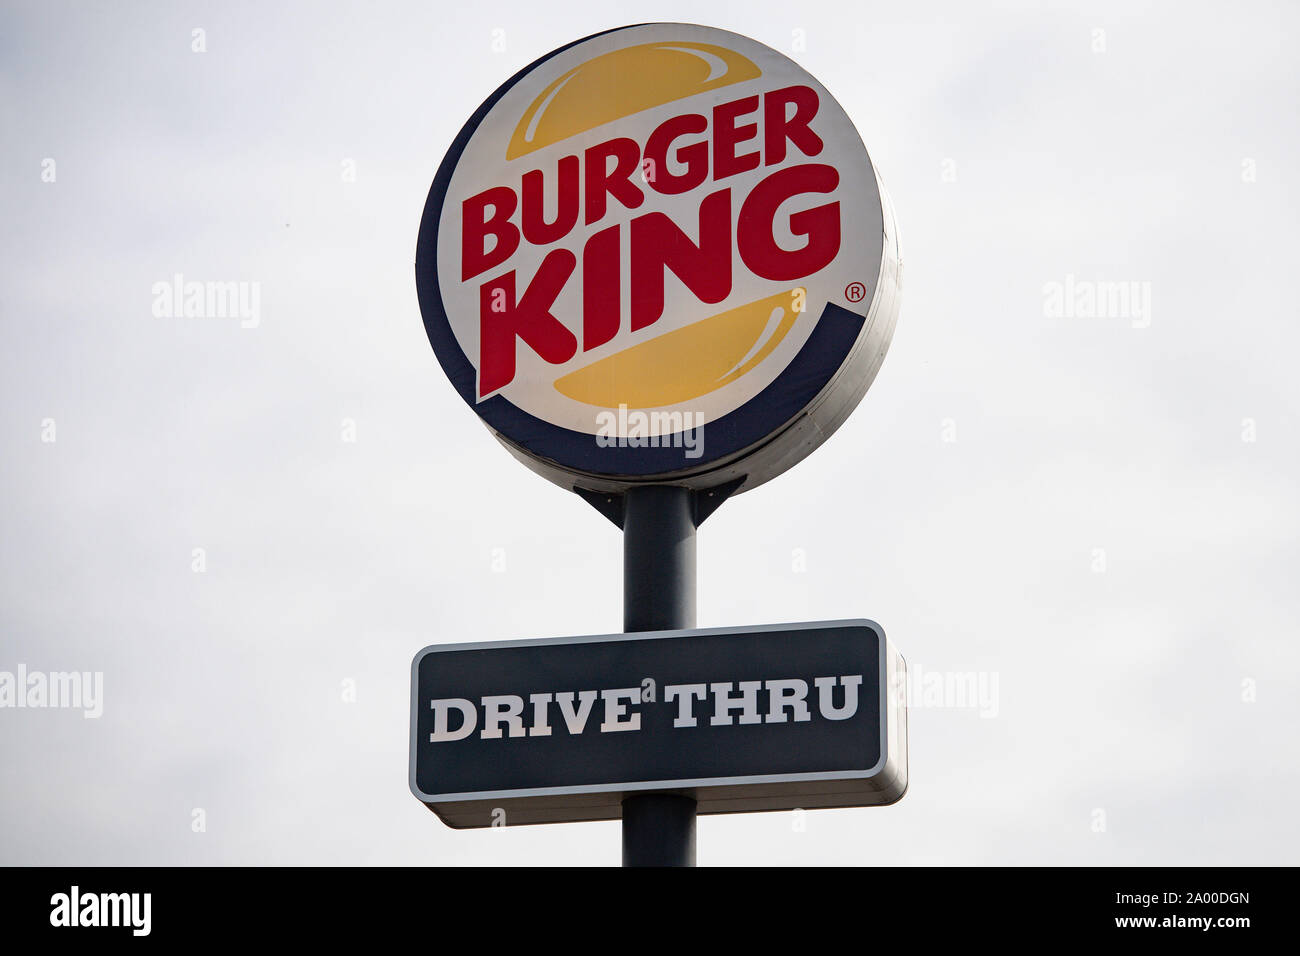 Un signe pour un Burger King drive thru restaurant. La chaîne de restauration rapide a annoncé qu'ils suppriment tous les jouets en plastique de son aire de repas servis au Royaume-Uni à partir de jeudi à économiser environ 320 tonnes de déchets par an. Banque D'Images